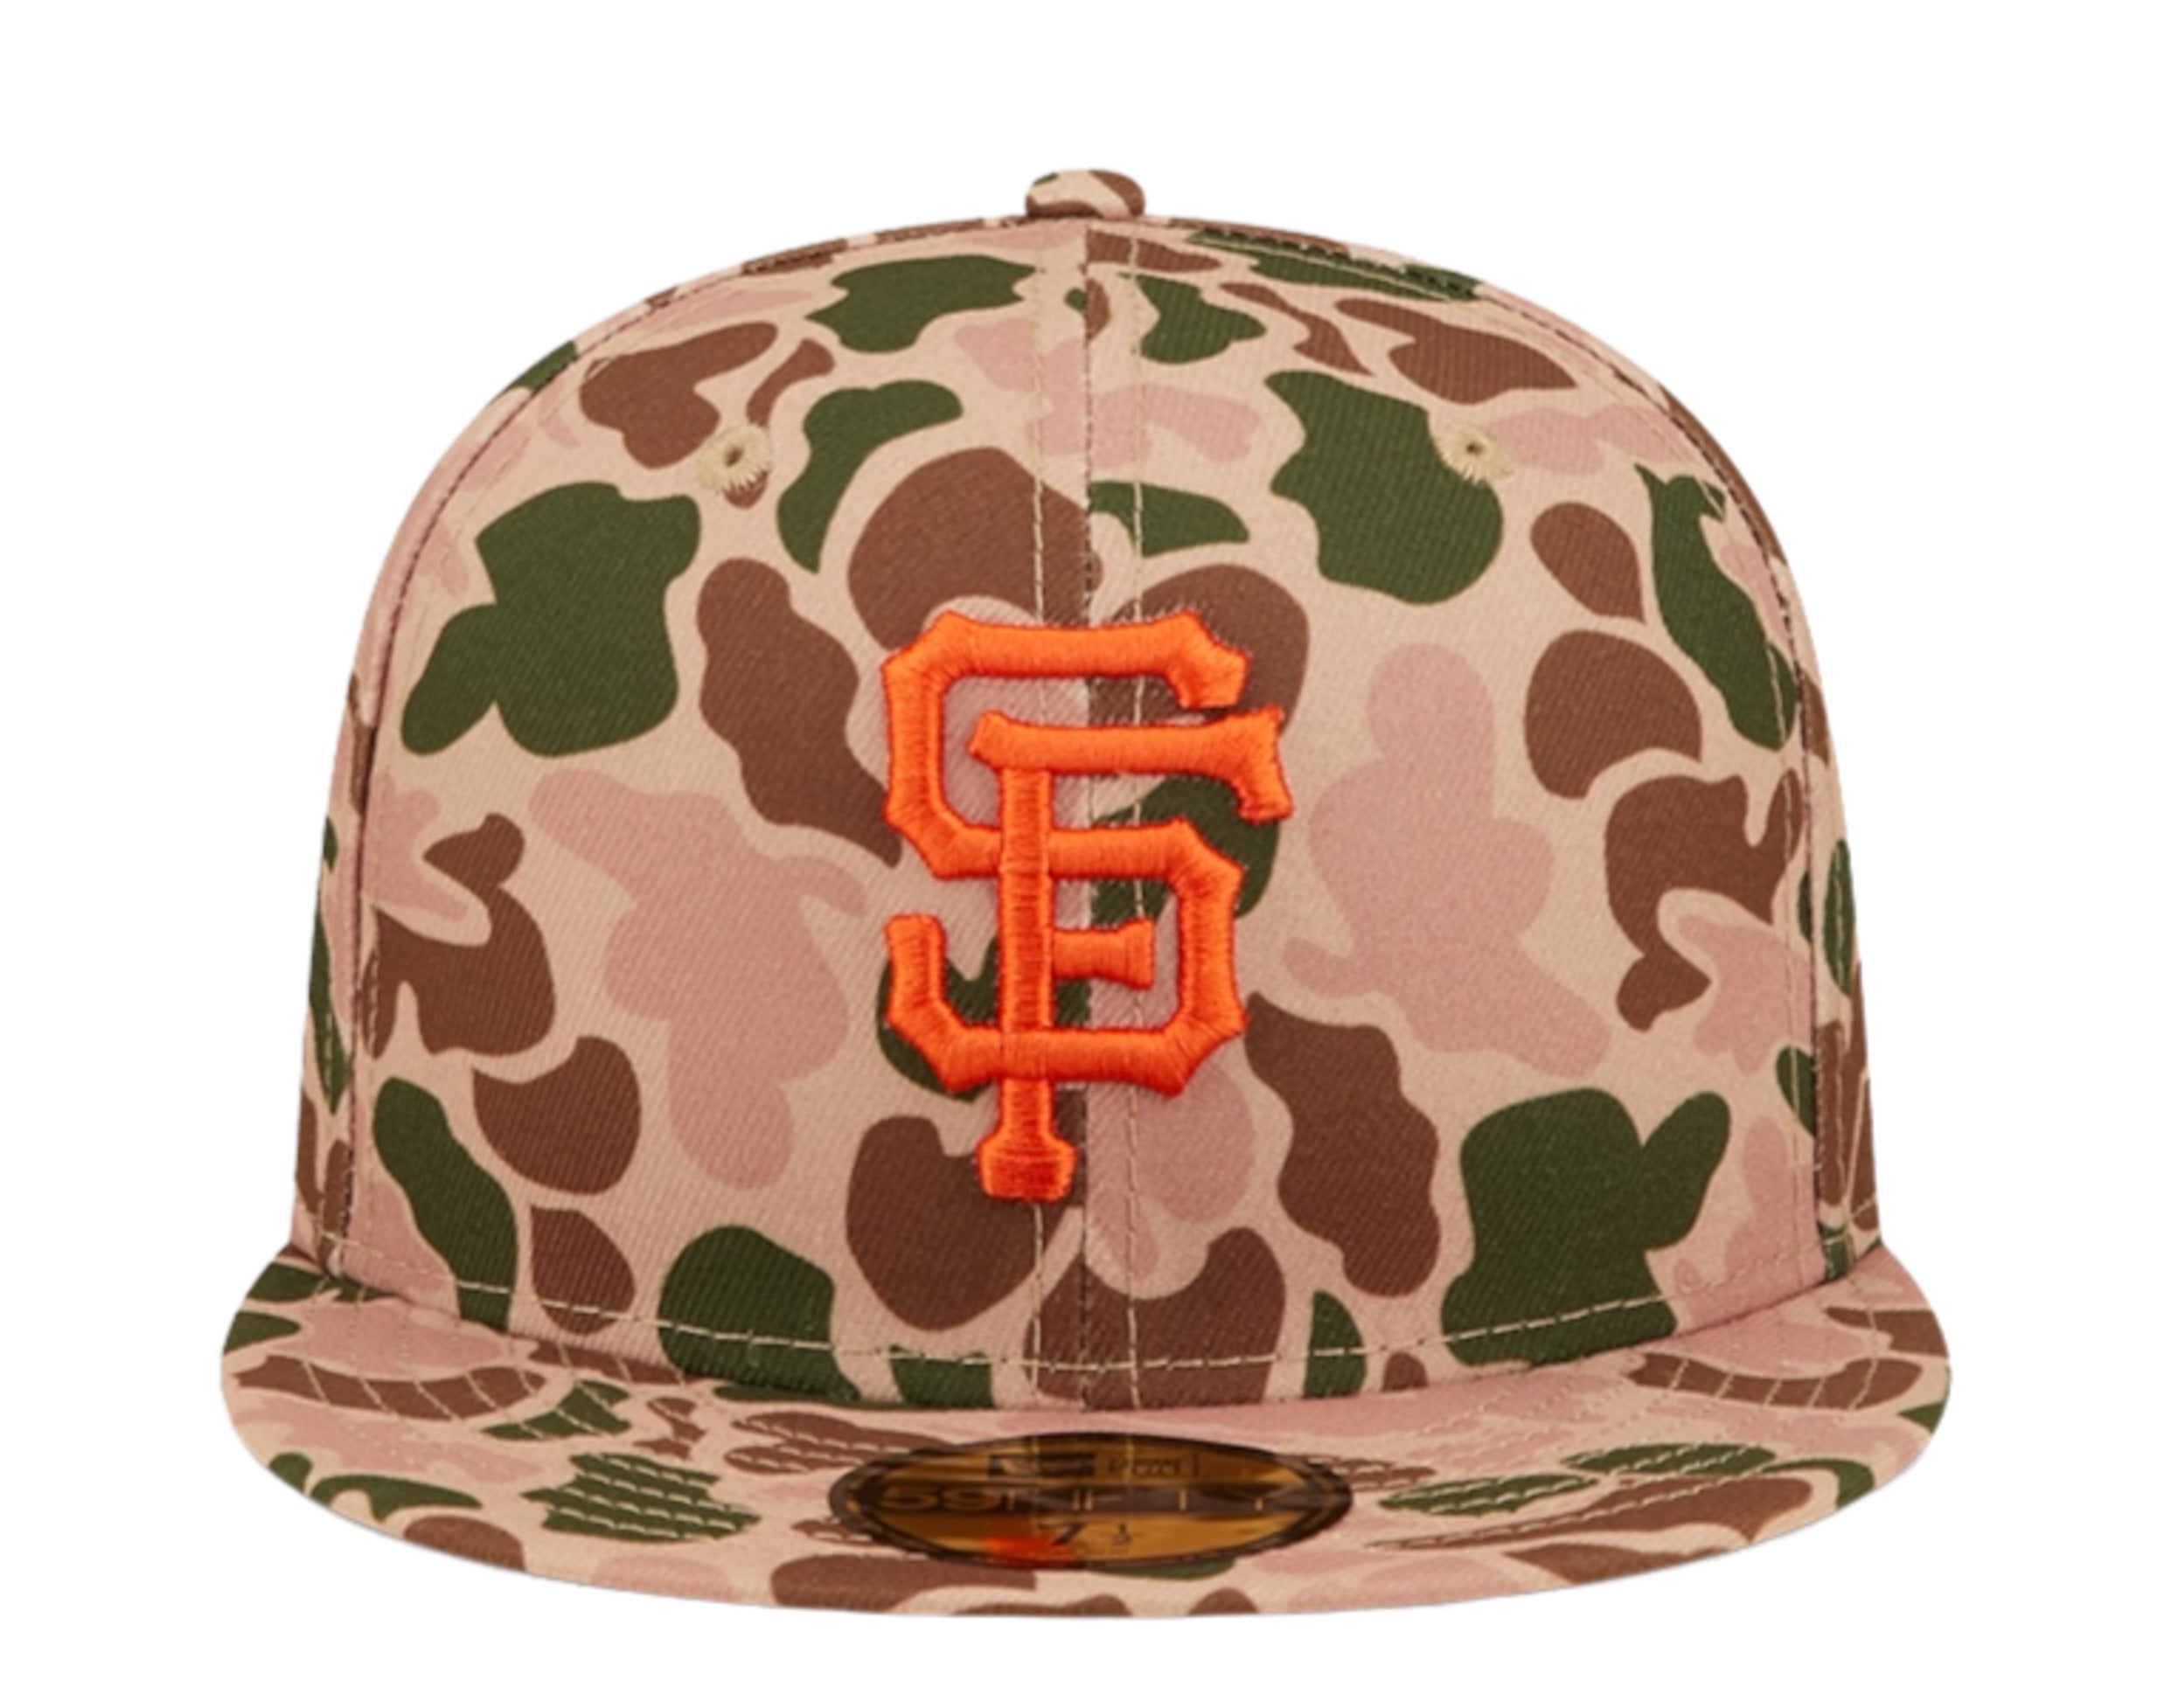 San Diego Padres New Era Digital Camo Hat Size 7 3/8